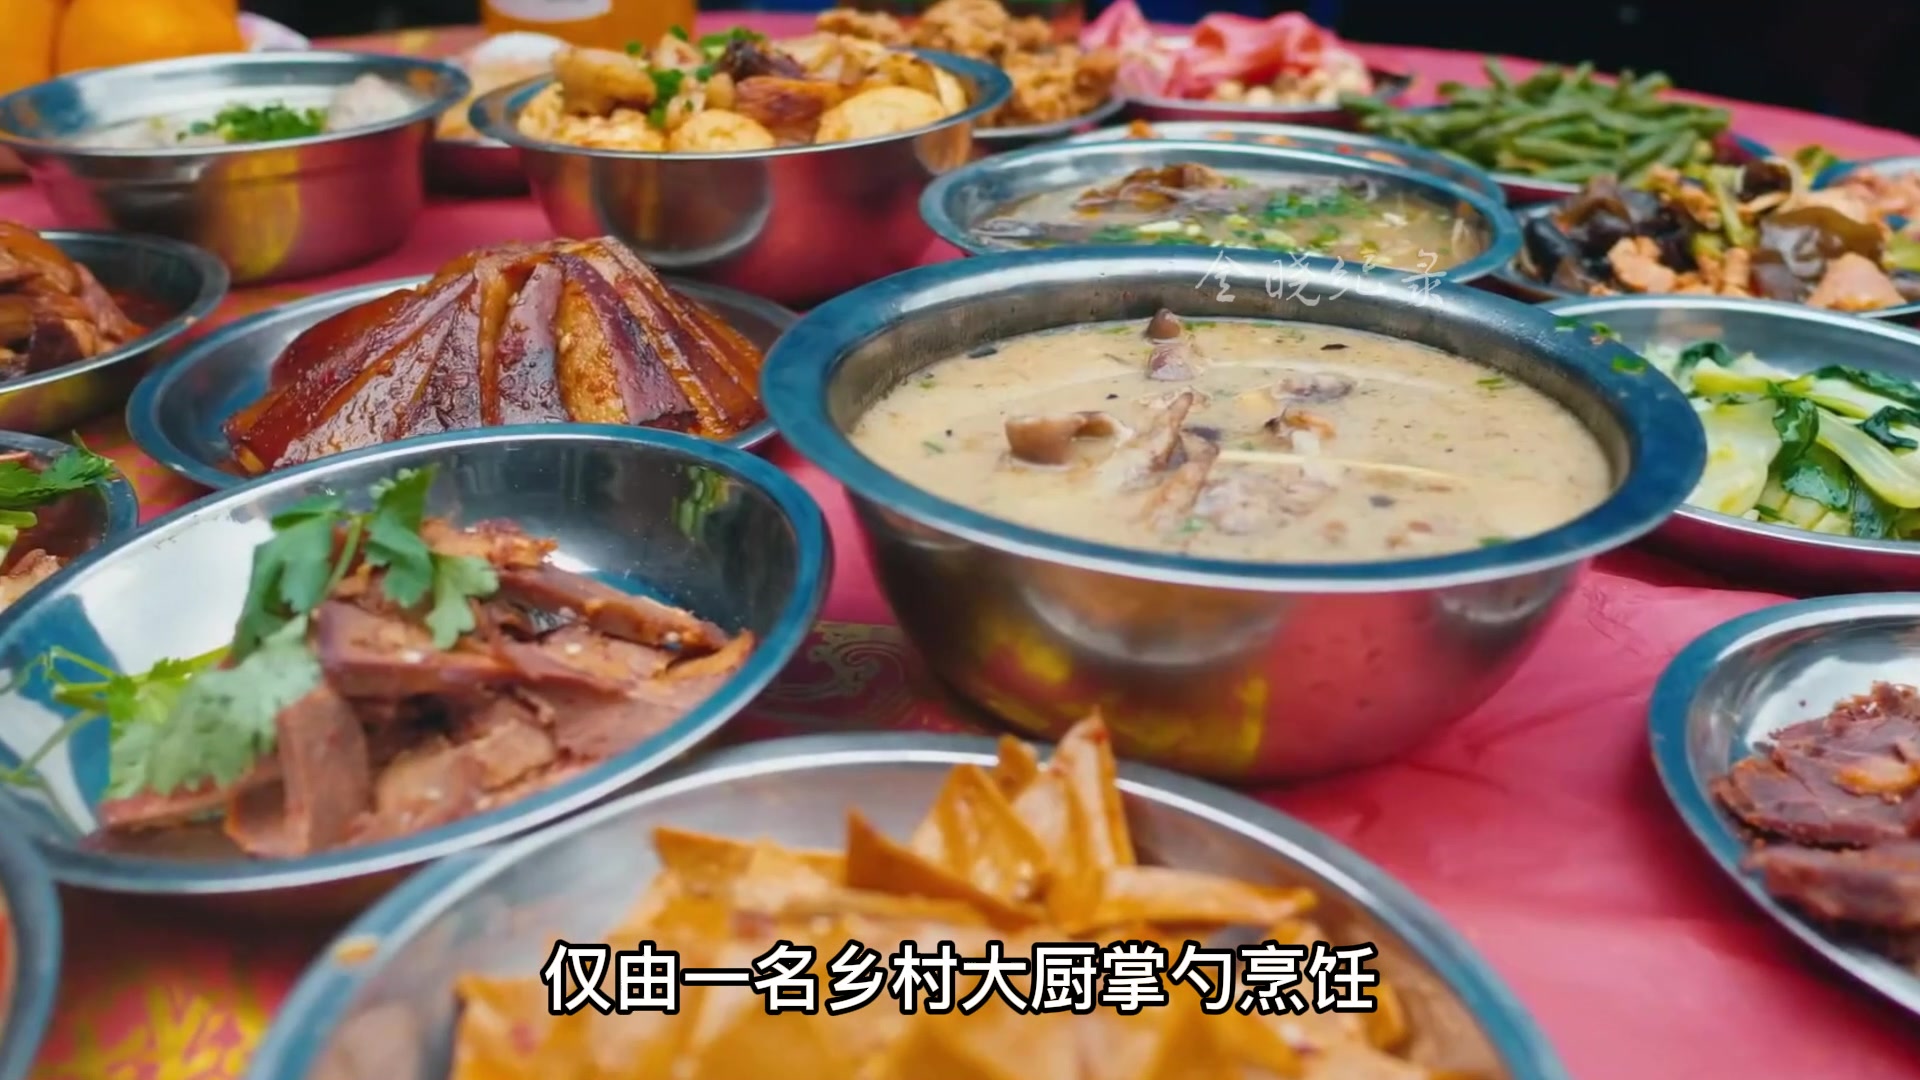 四川农村大席菜——坝坝席，菜品丰富，风味独特，十分惊艳，你馋了吗？